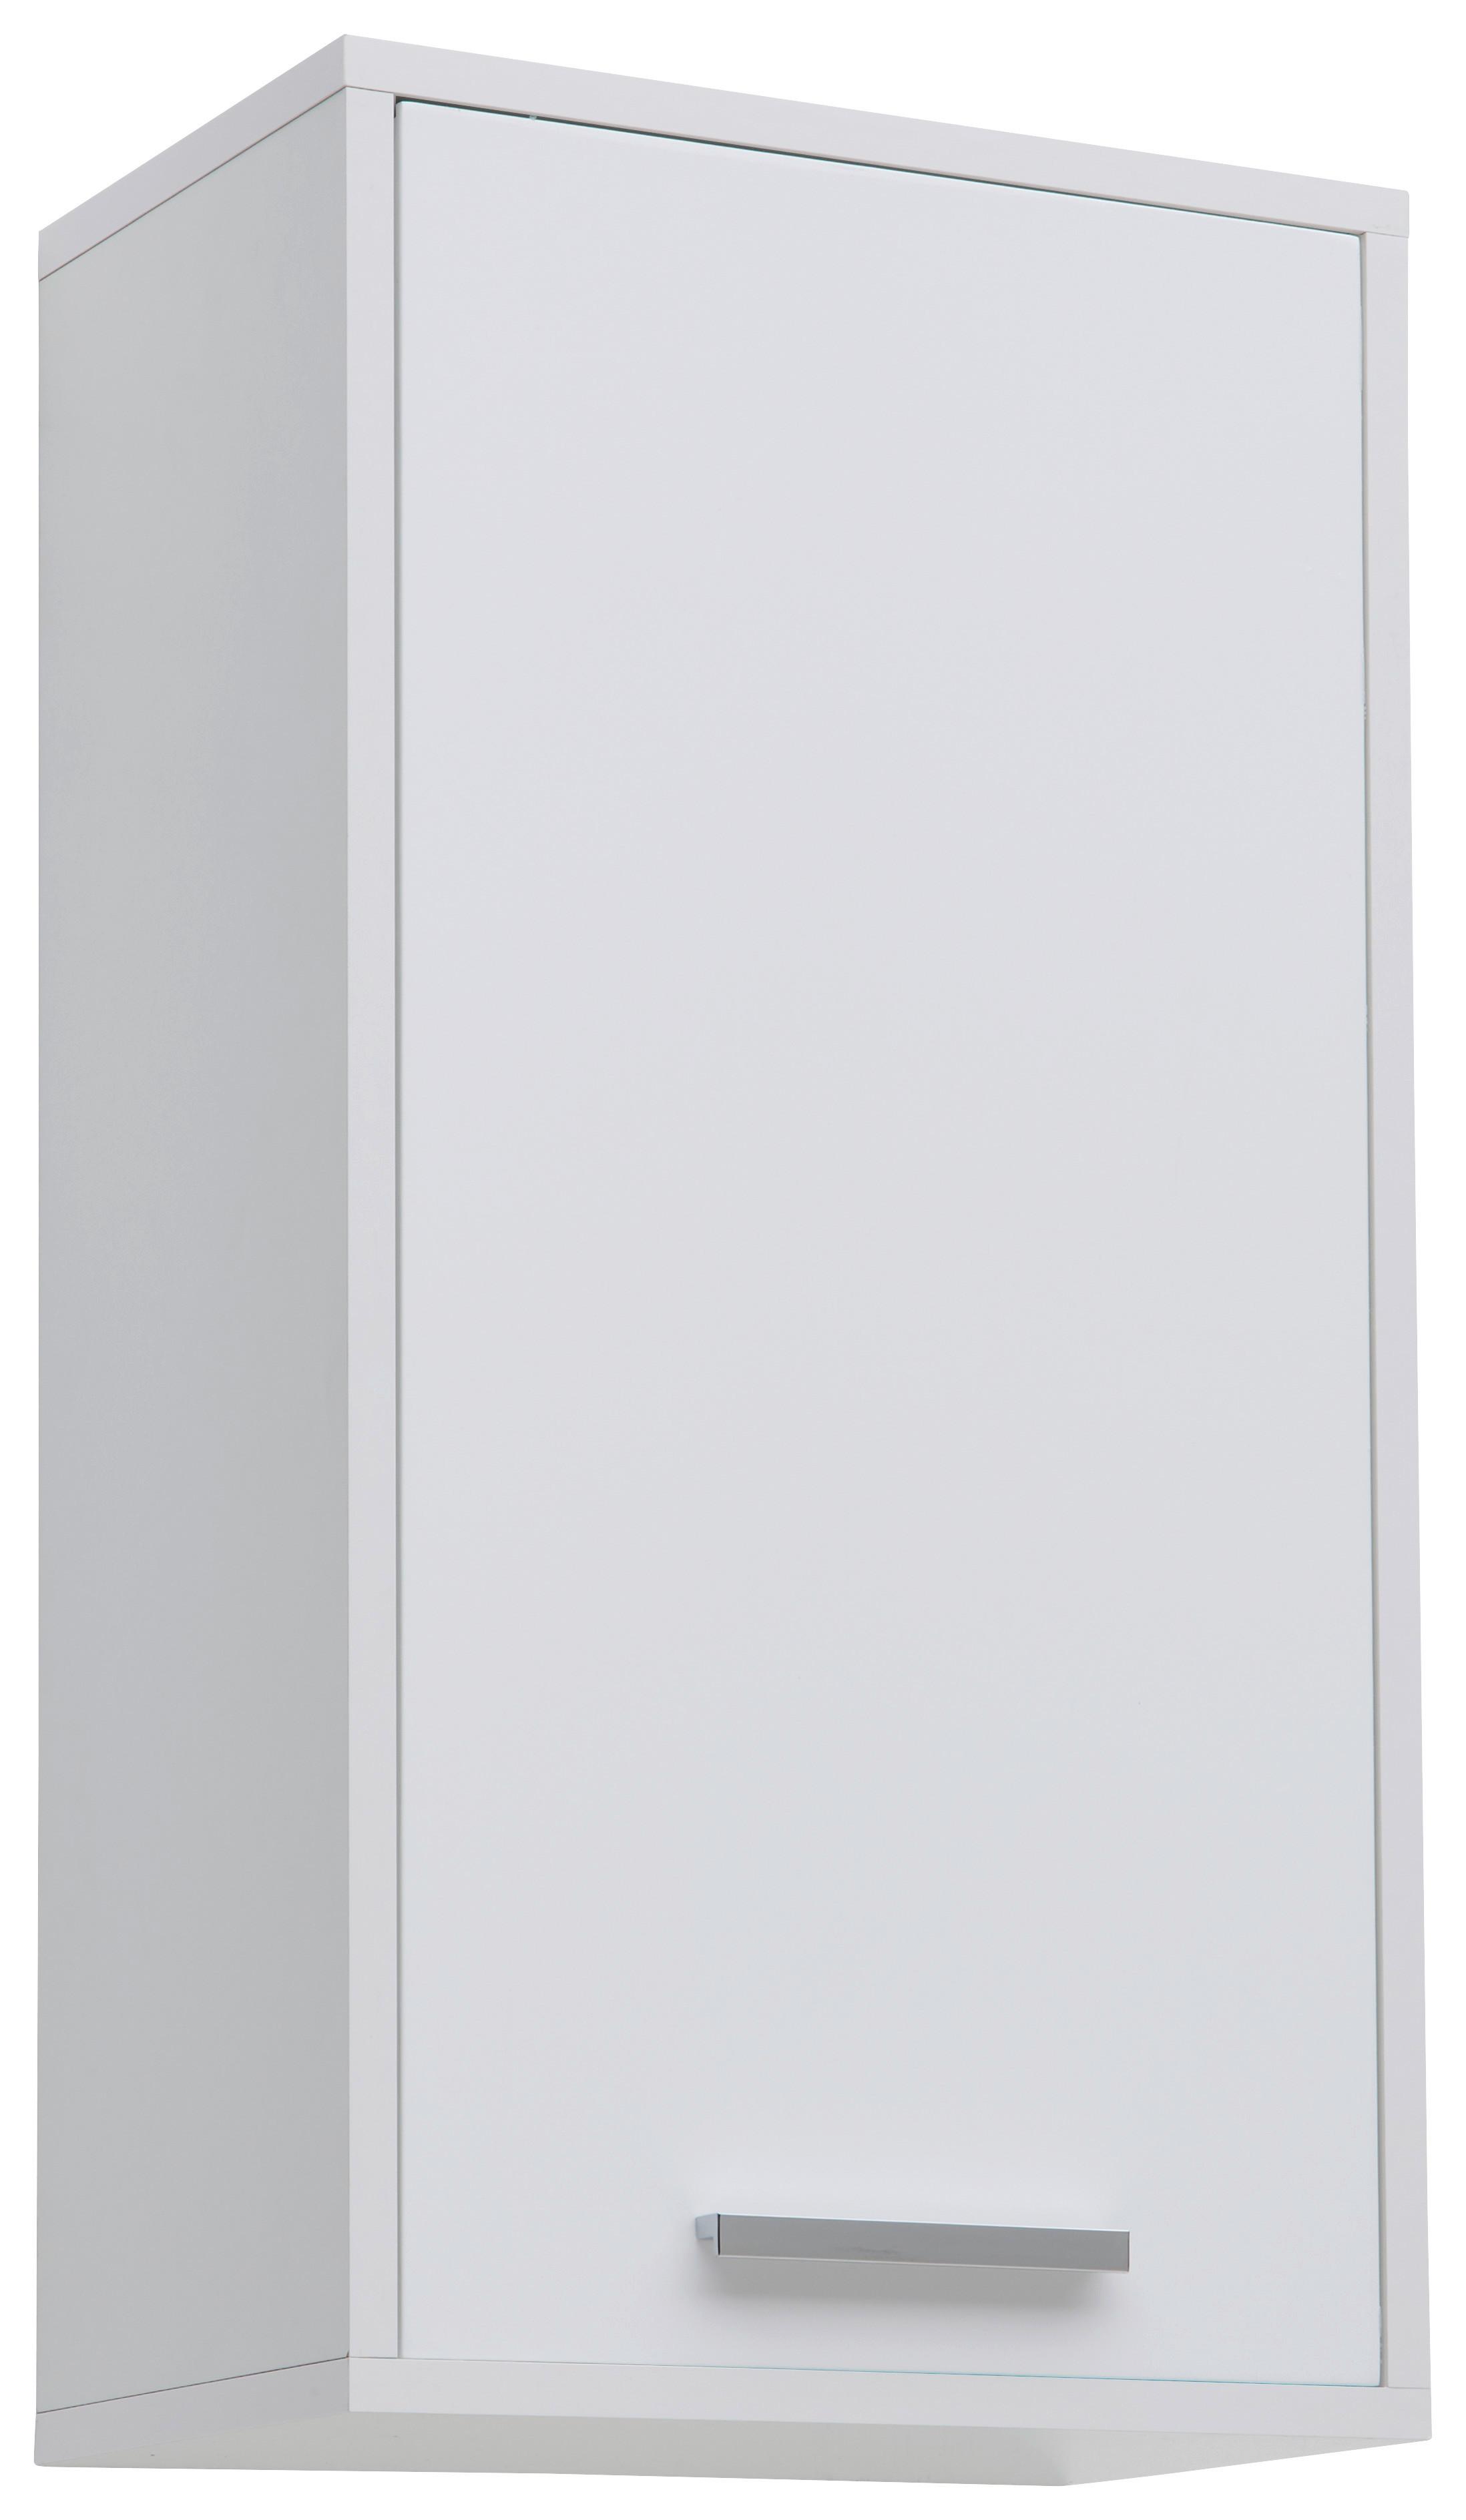 Závěsná Skříňka Milano Hg - bílá/barvy chromu, Moderní, kov/kompozitní dřevo (38/72/23cm)